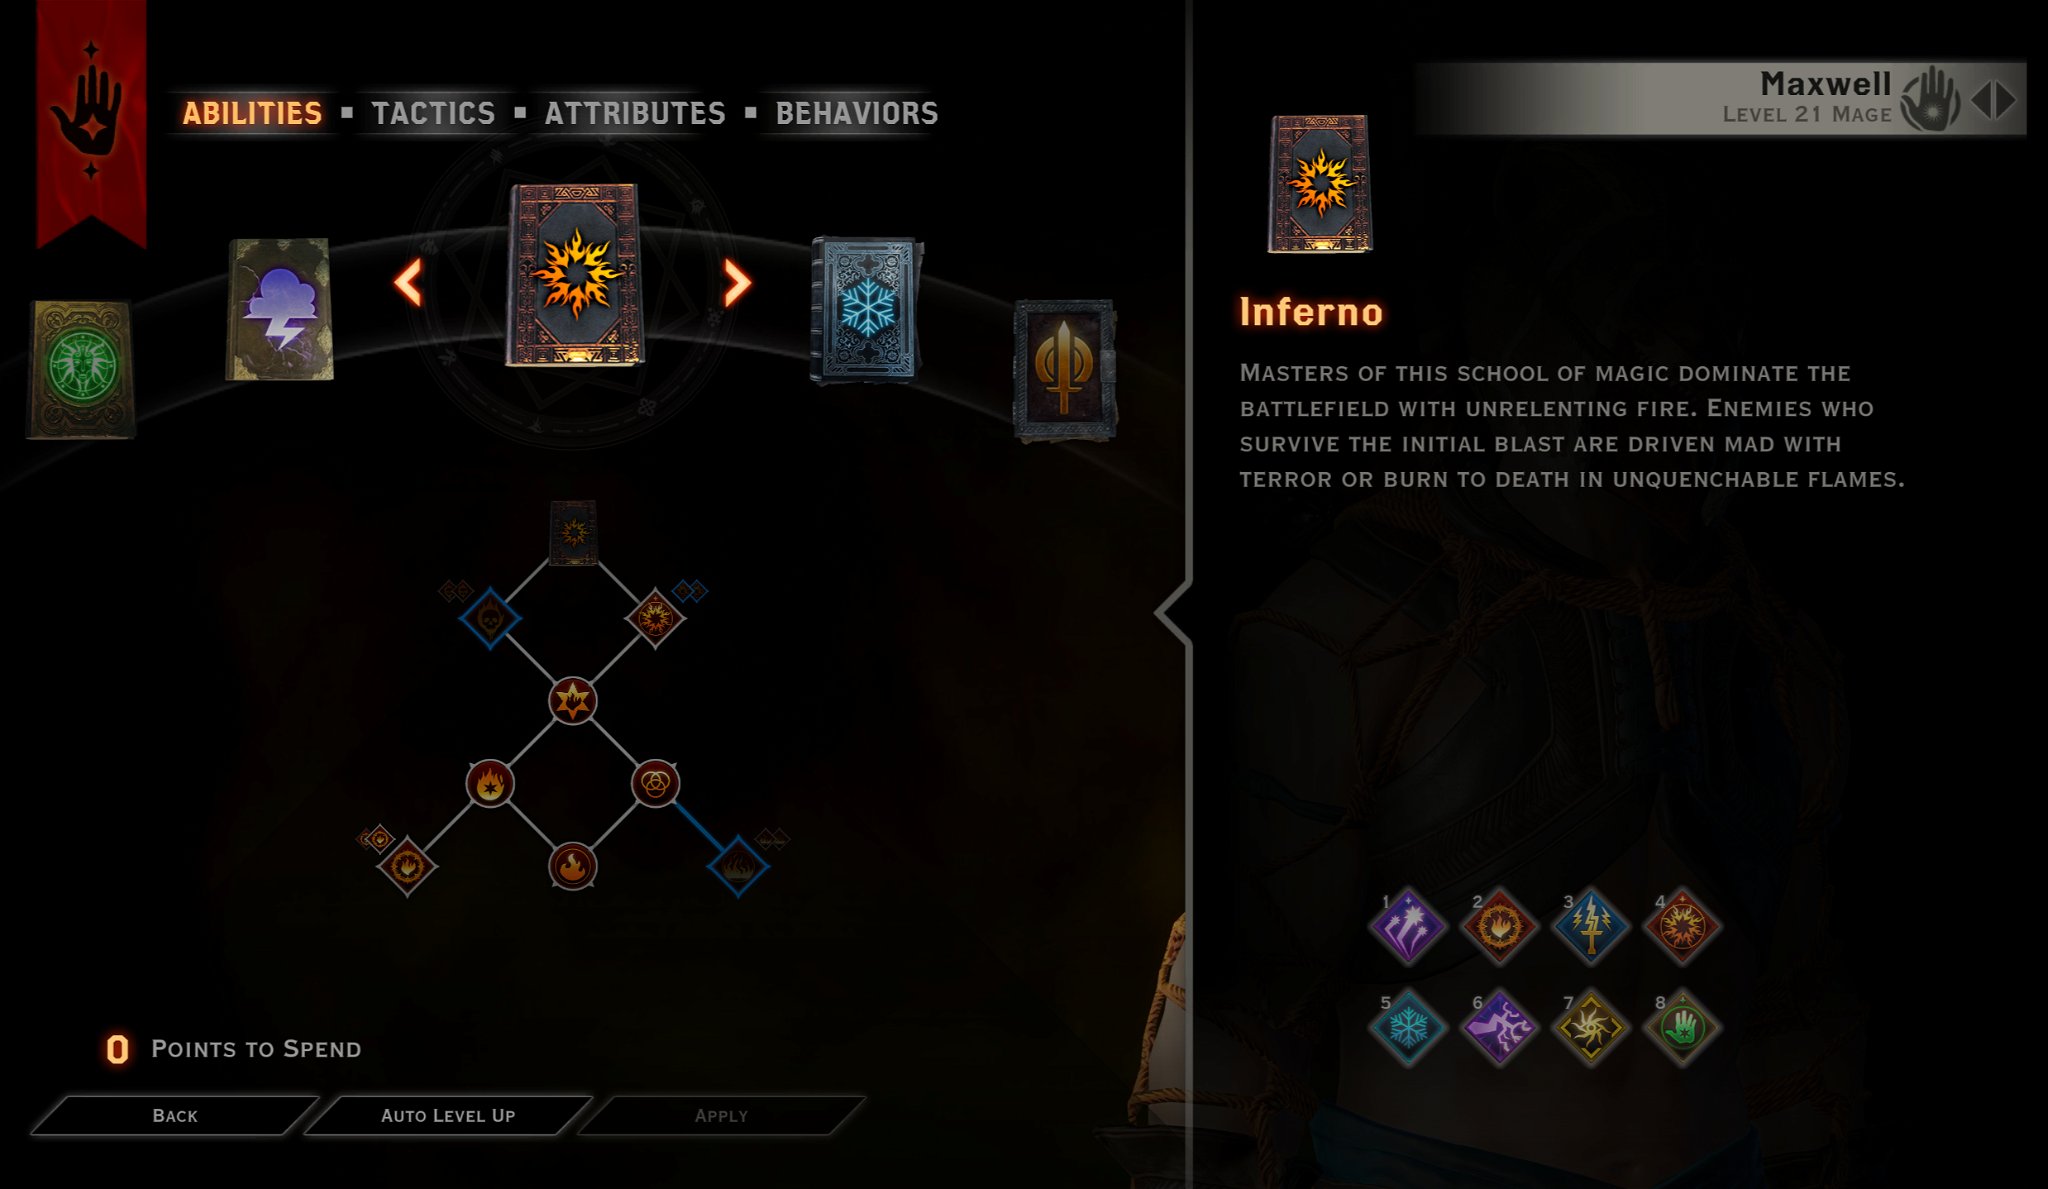 Knight Enchanter Inferno ability tree